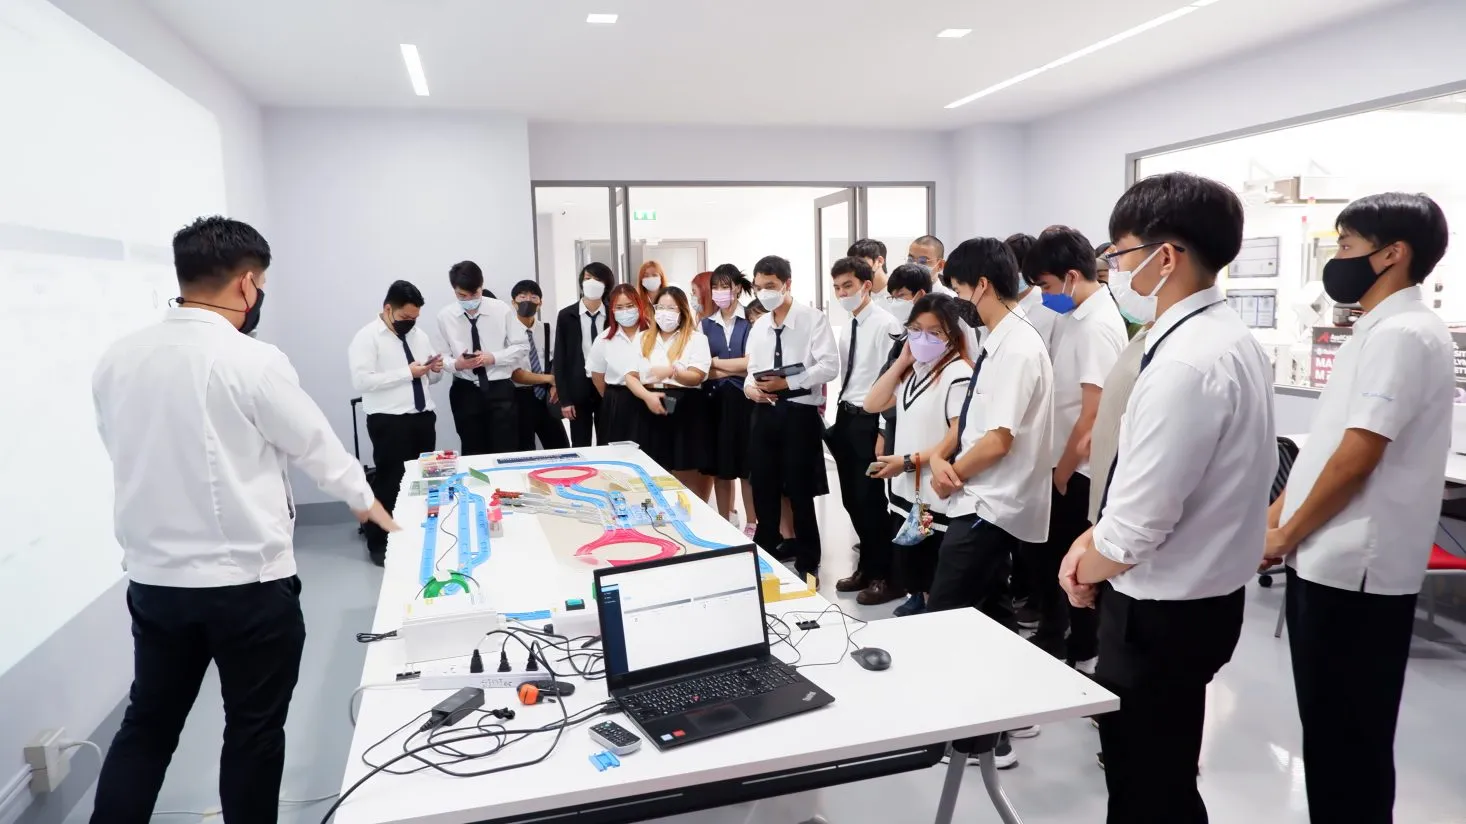 คณาจารย์และนักศึกษาวิทยาลัยนานาชาติ สถาบันเทคโนโลยี ไทย-ญี่ปุ่น (TNIC) เข้าเยี่ยมชมศูนย์เทคนิคแห่งการเรียนรู้ SIMTEC